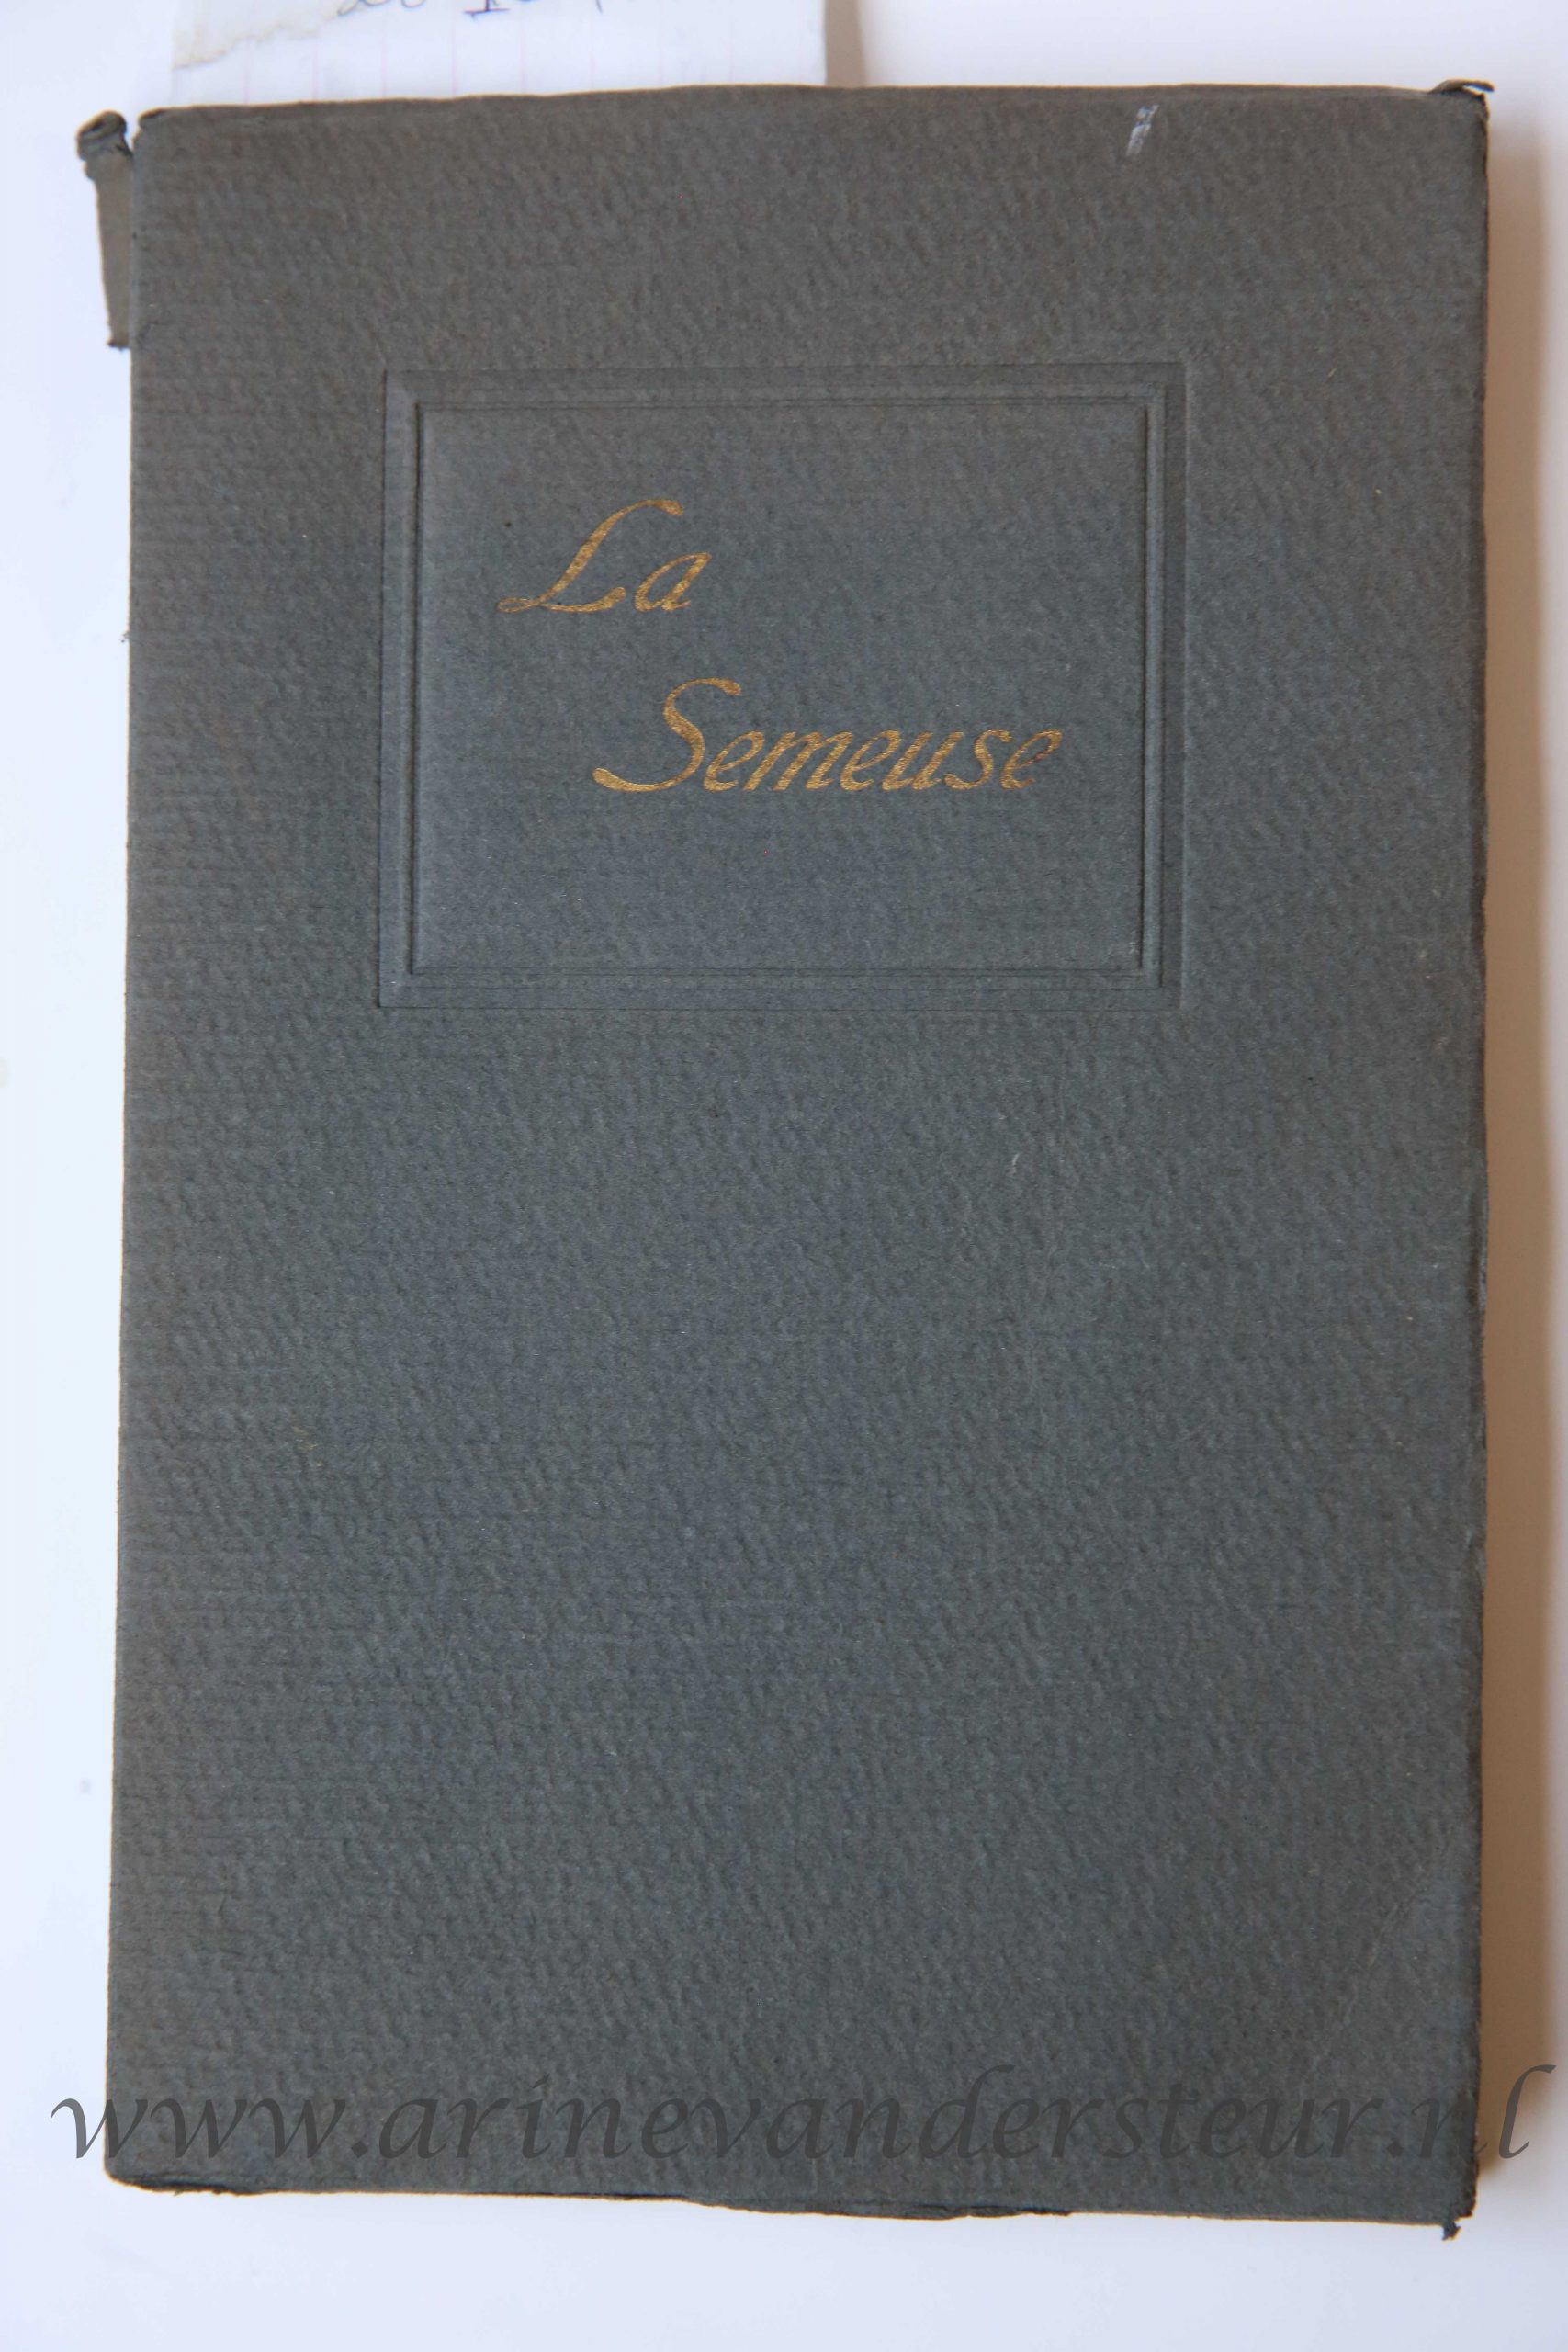 [ Fock, Maria Anne ] - La Semeuse, Menton [ 1914 ], 170 pag., priv uitgave.